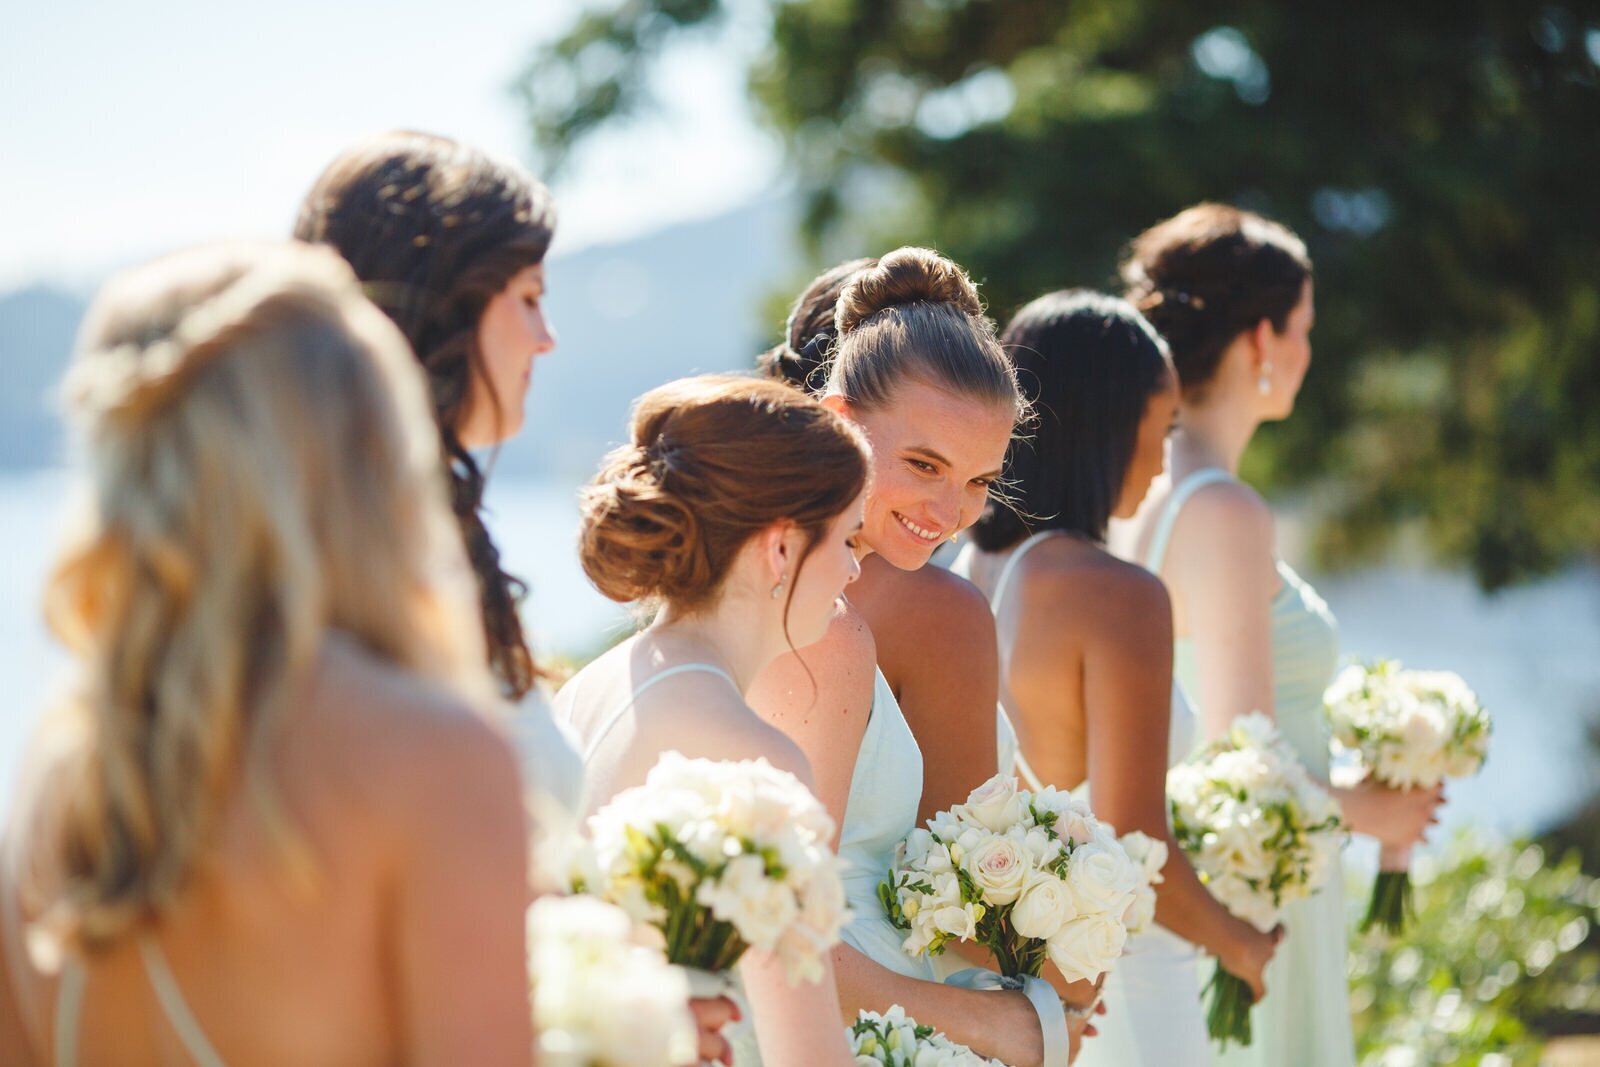 Bridesmaid during ceremony - Satya Curcio Photography